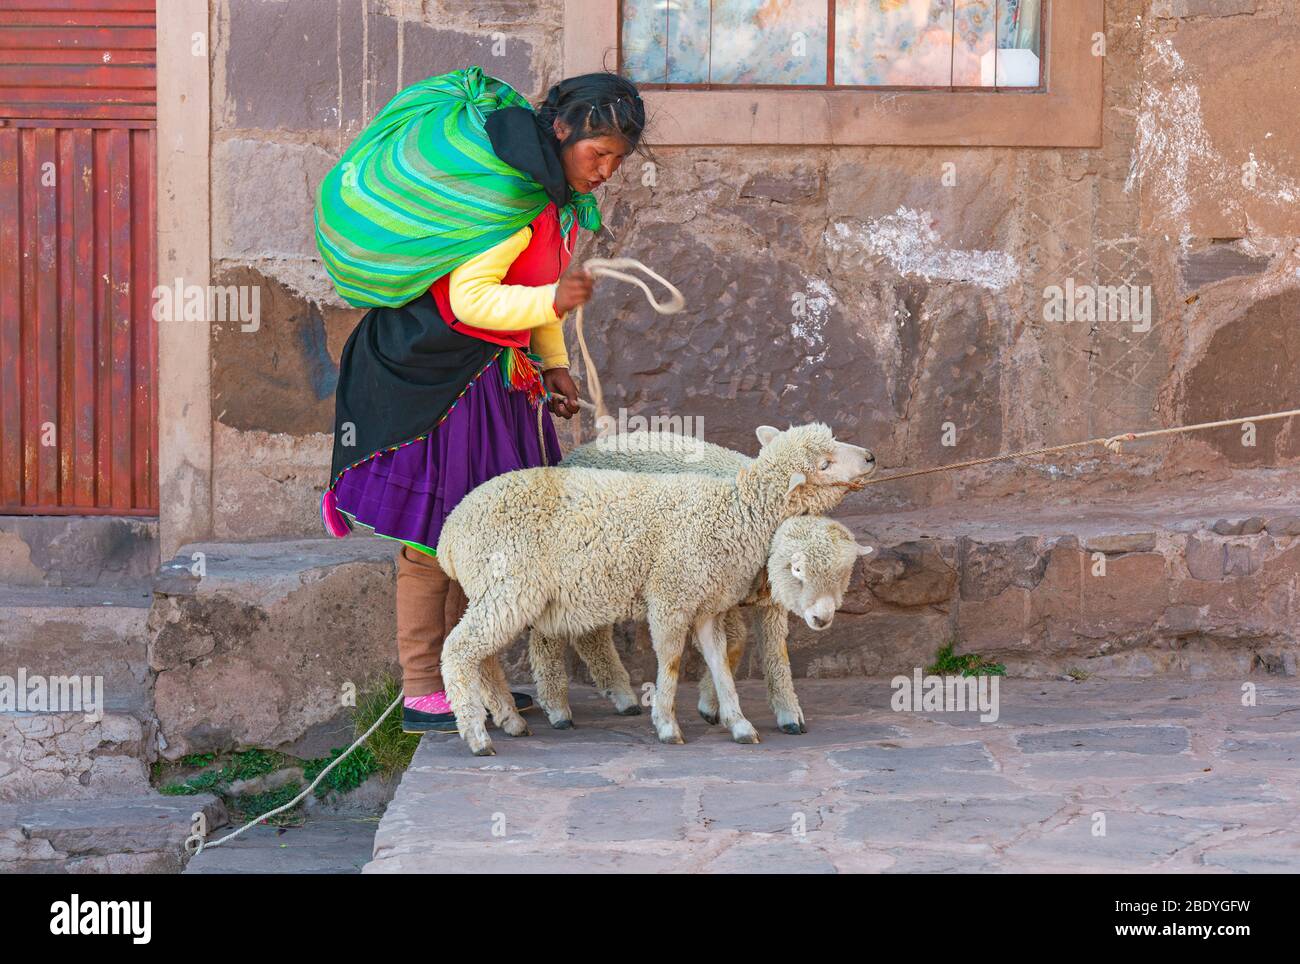 Peruanische Quechua indigene Frau in traditioneller Kleidung mit zwei Schafen, Titicaca See, Isla Taquile, Peru. Stockfoto